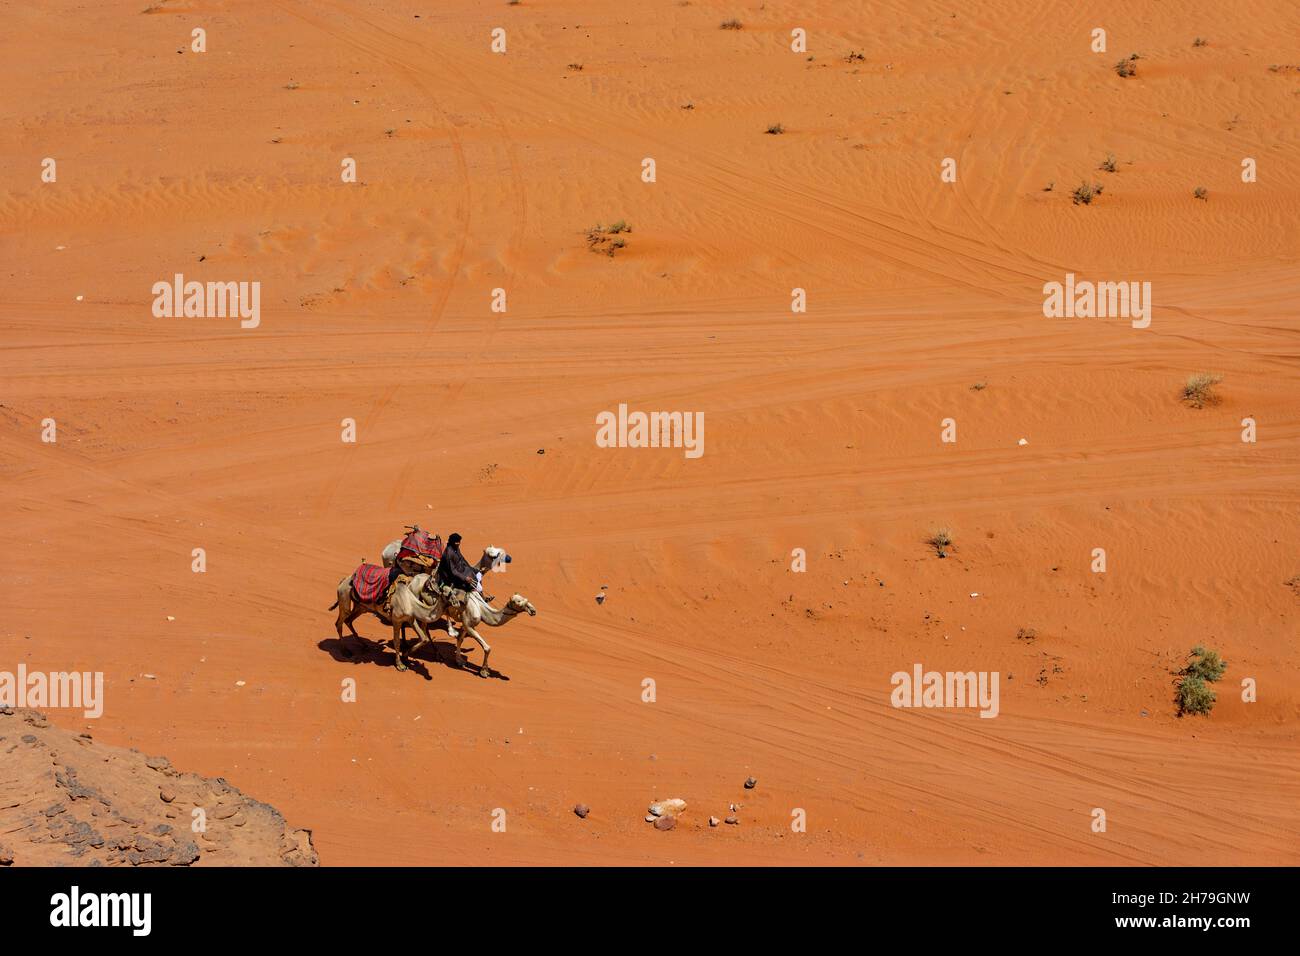 WADI RUM, JORDANIA - 30 DE AGOSTO de 2021: Un hombre viaja a través del desierto con tres camellos el 30 de agosto de 2021 en Wadi Rum, Jordania Foto de stock